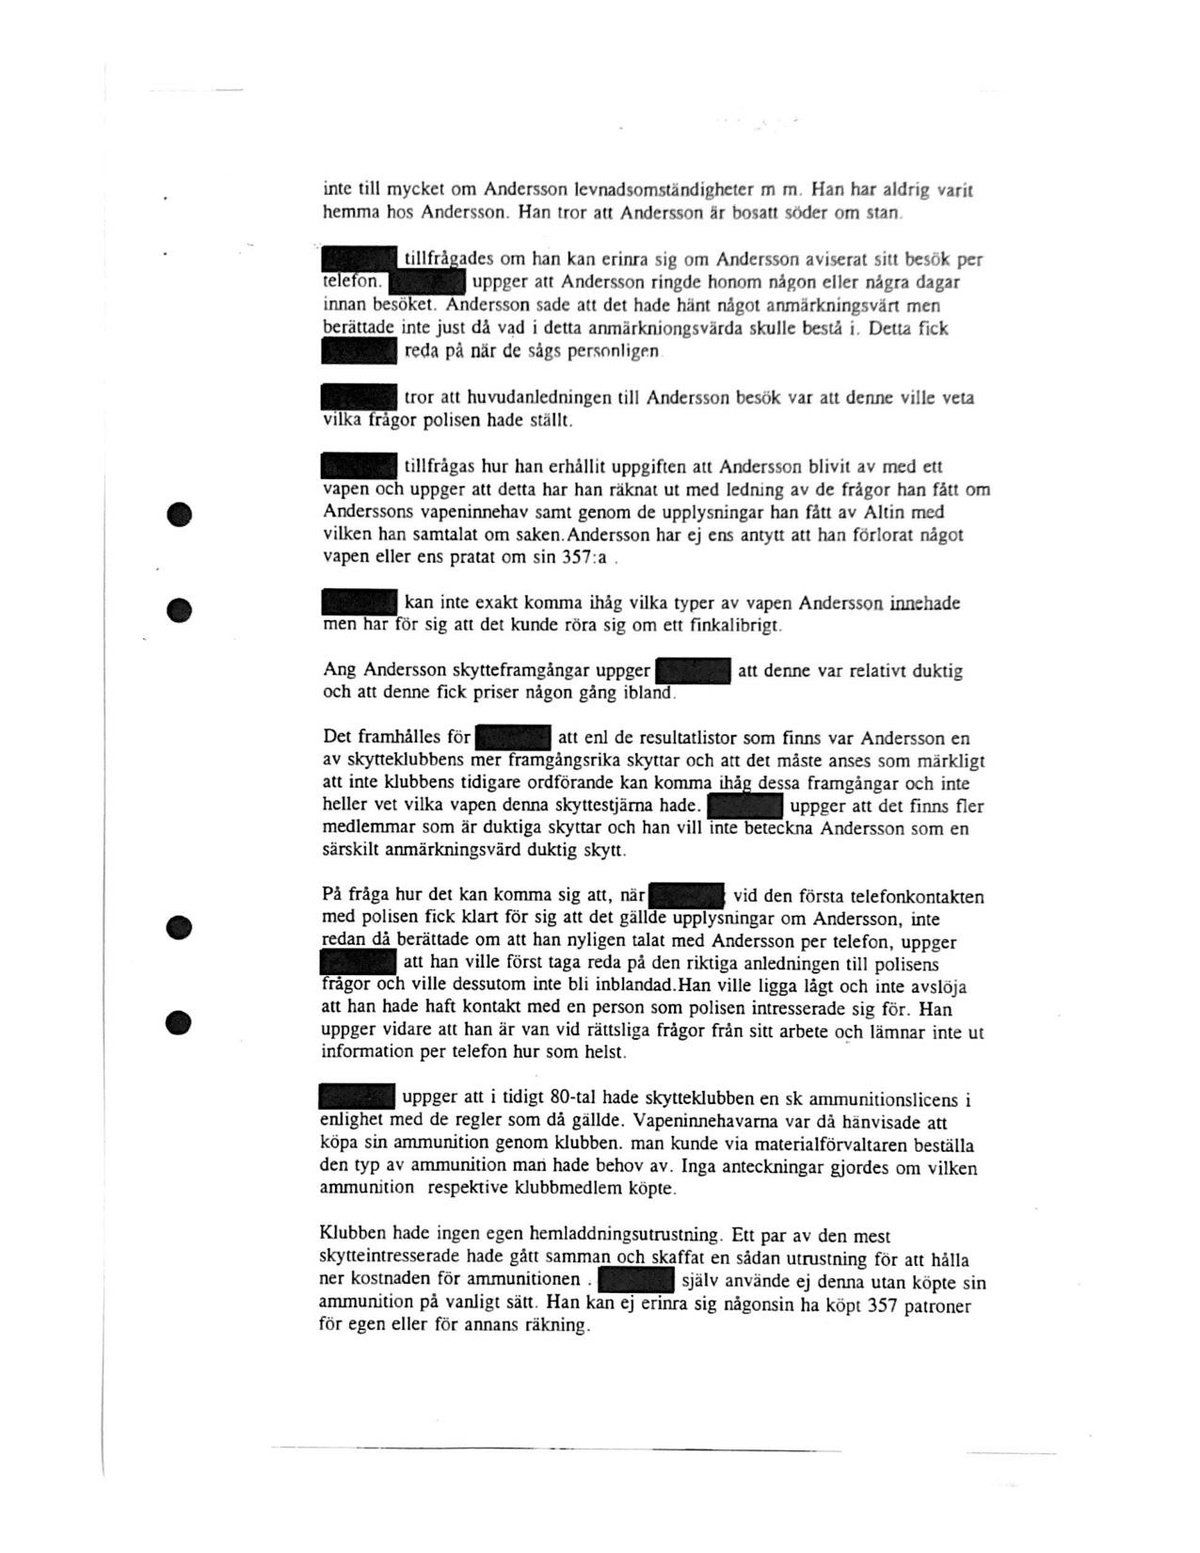 Pol-1995-01-24 IVA16655-00 Förhör-ordf-akademiska-skytteklubben.pdf